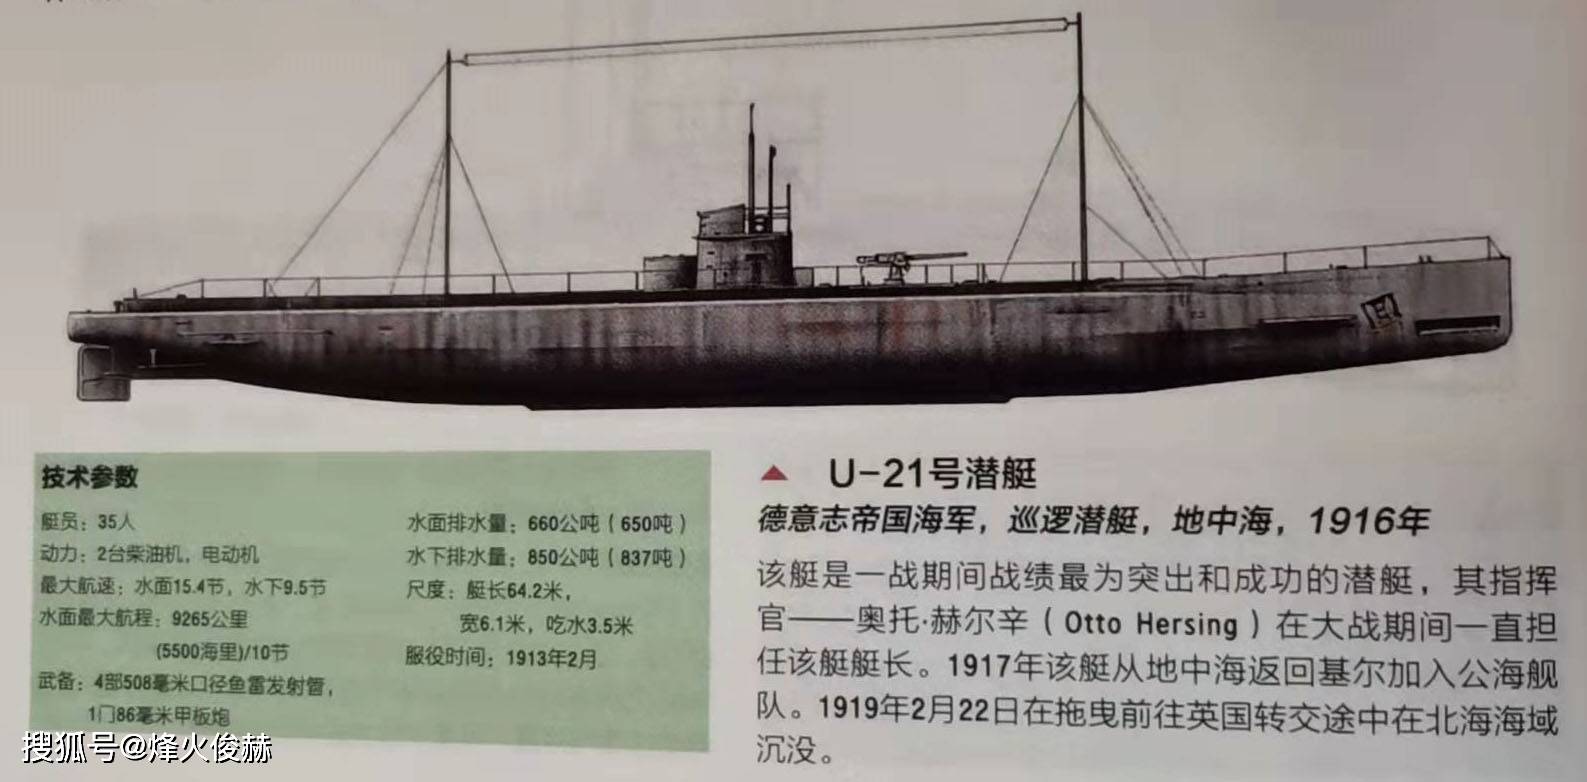 原创一战中的德国潜艇损失178艘单挑战列舰闪击同行潜艇